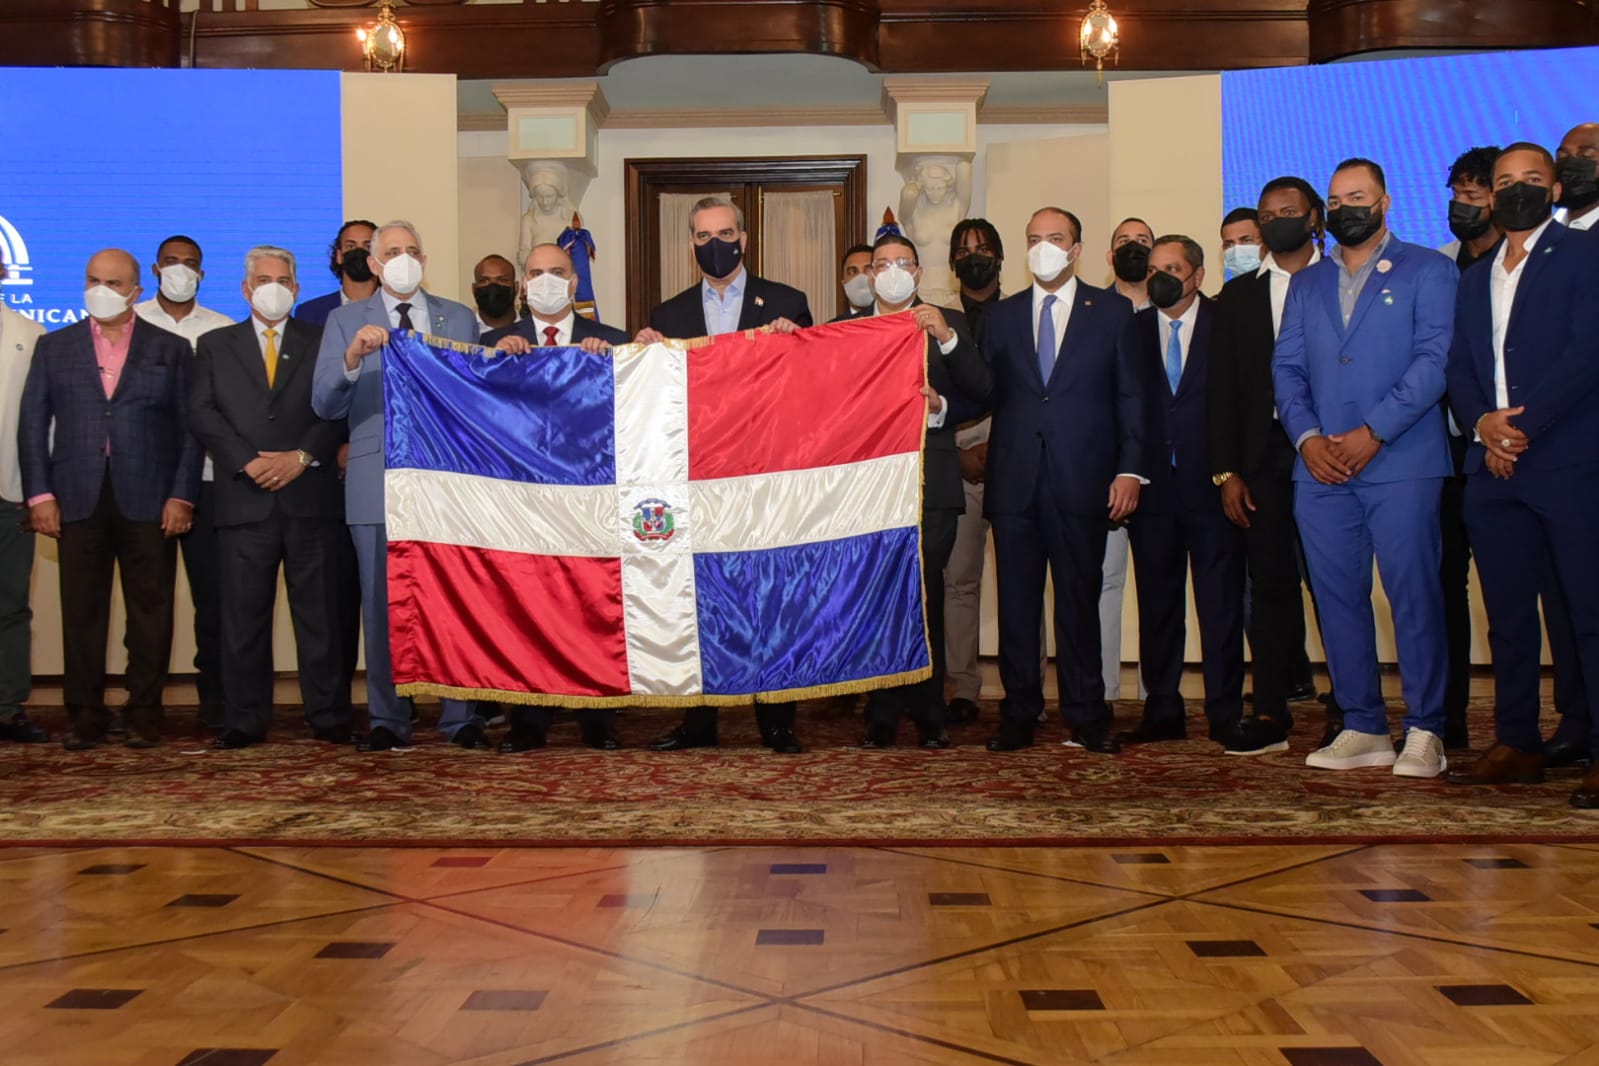 Presidente Abinader recibe a Gigantes; entrega Bandera Nacional